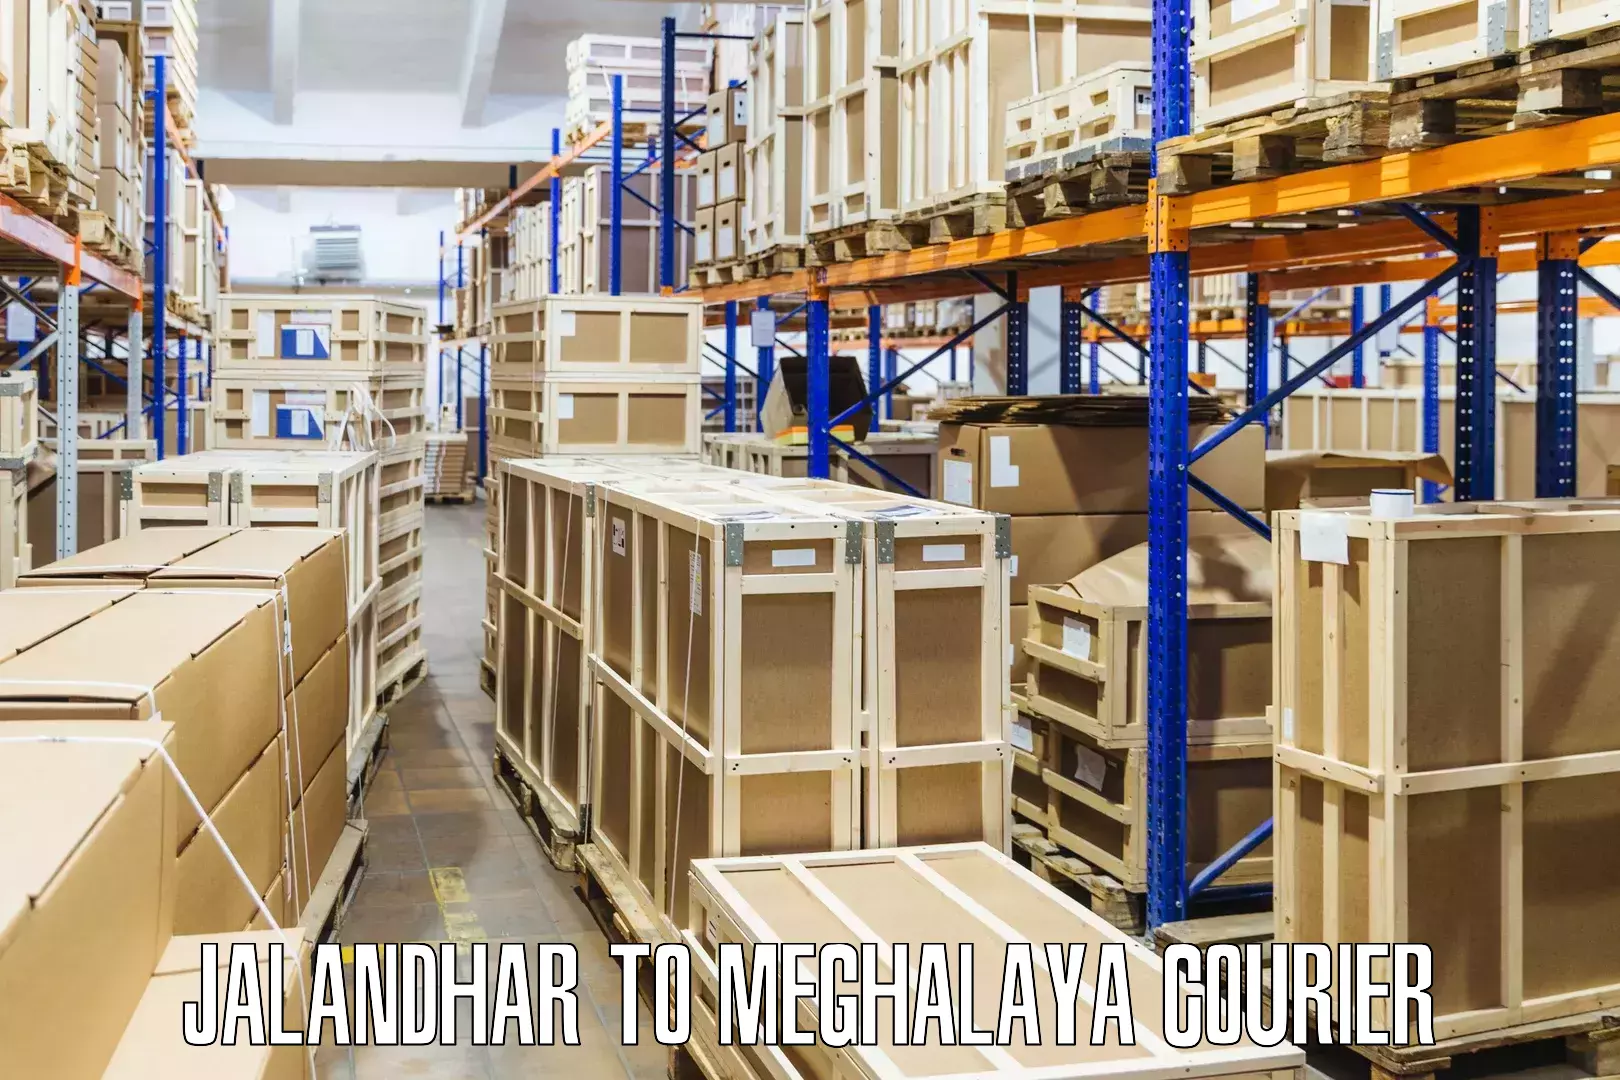 High-capacity shipping options Jalandhar to Mairang